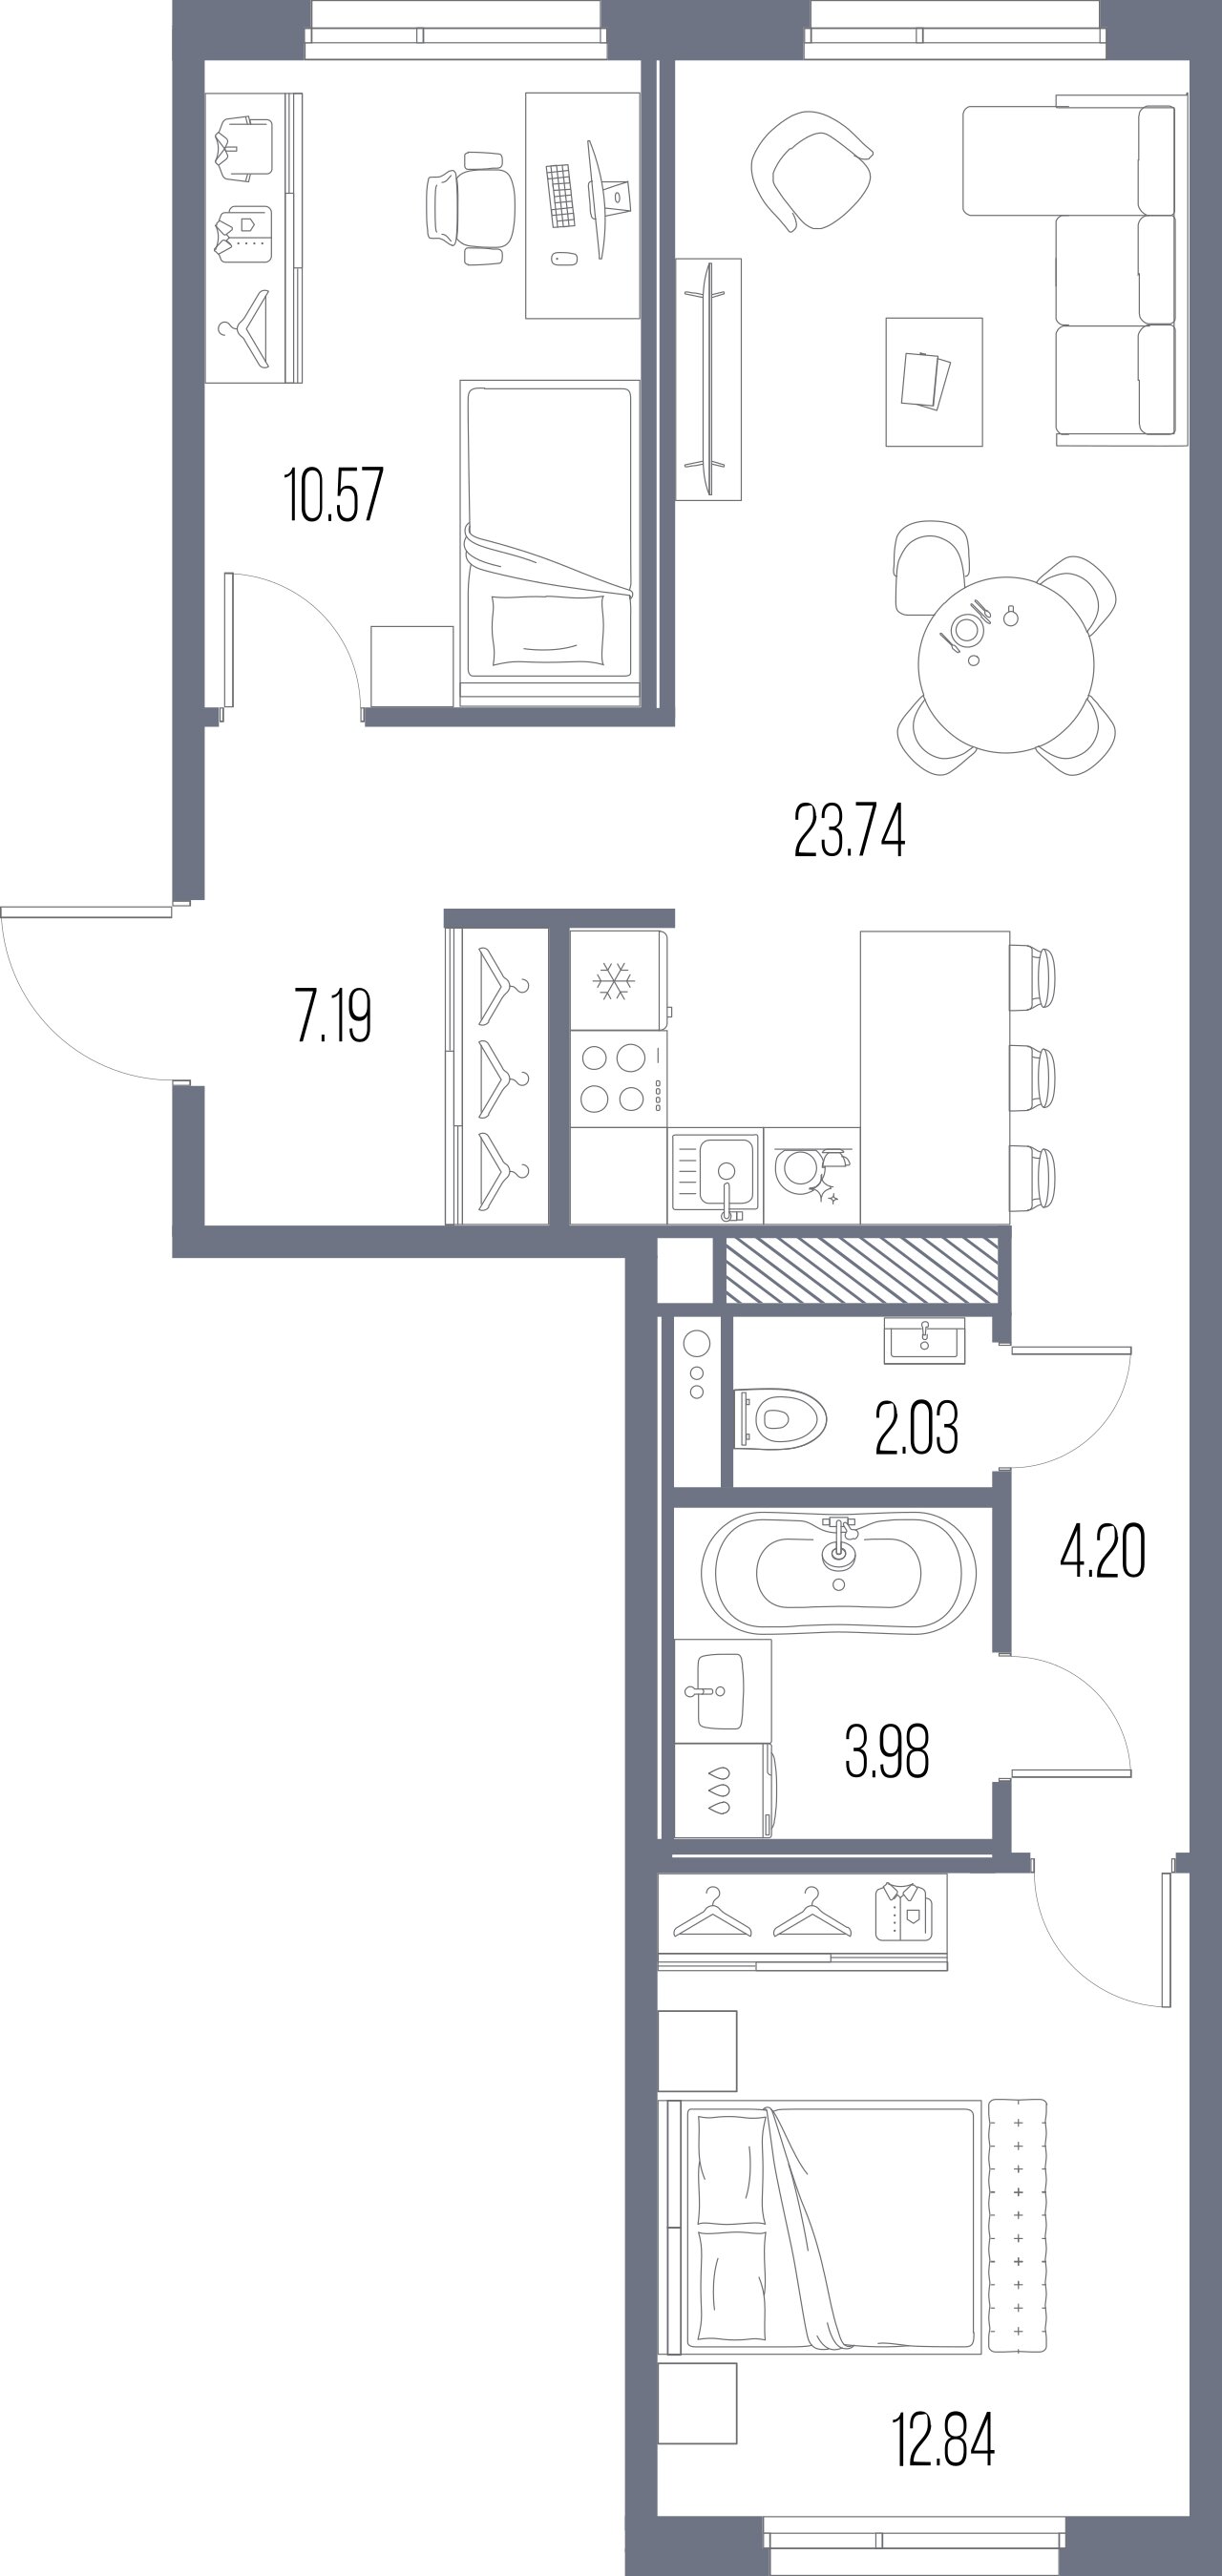 2-комнатная квартира  №124 в Legenda Васильевского: 64.55 м², этаж 5 - купить в Санкт-Петербурге